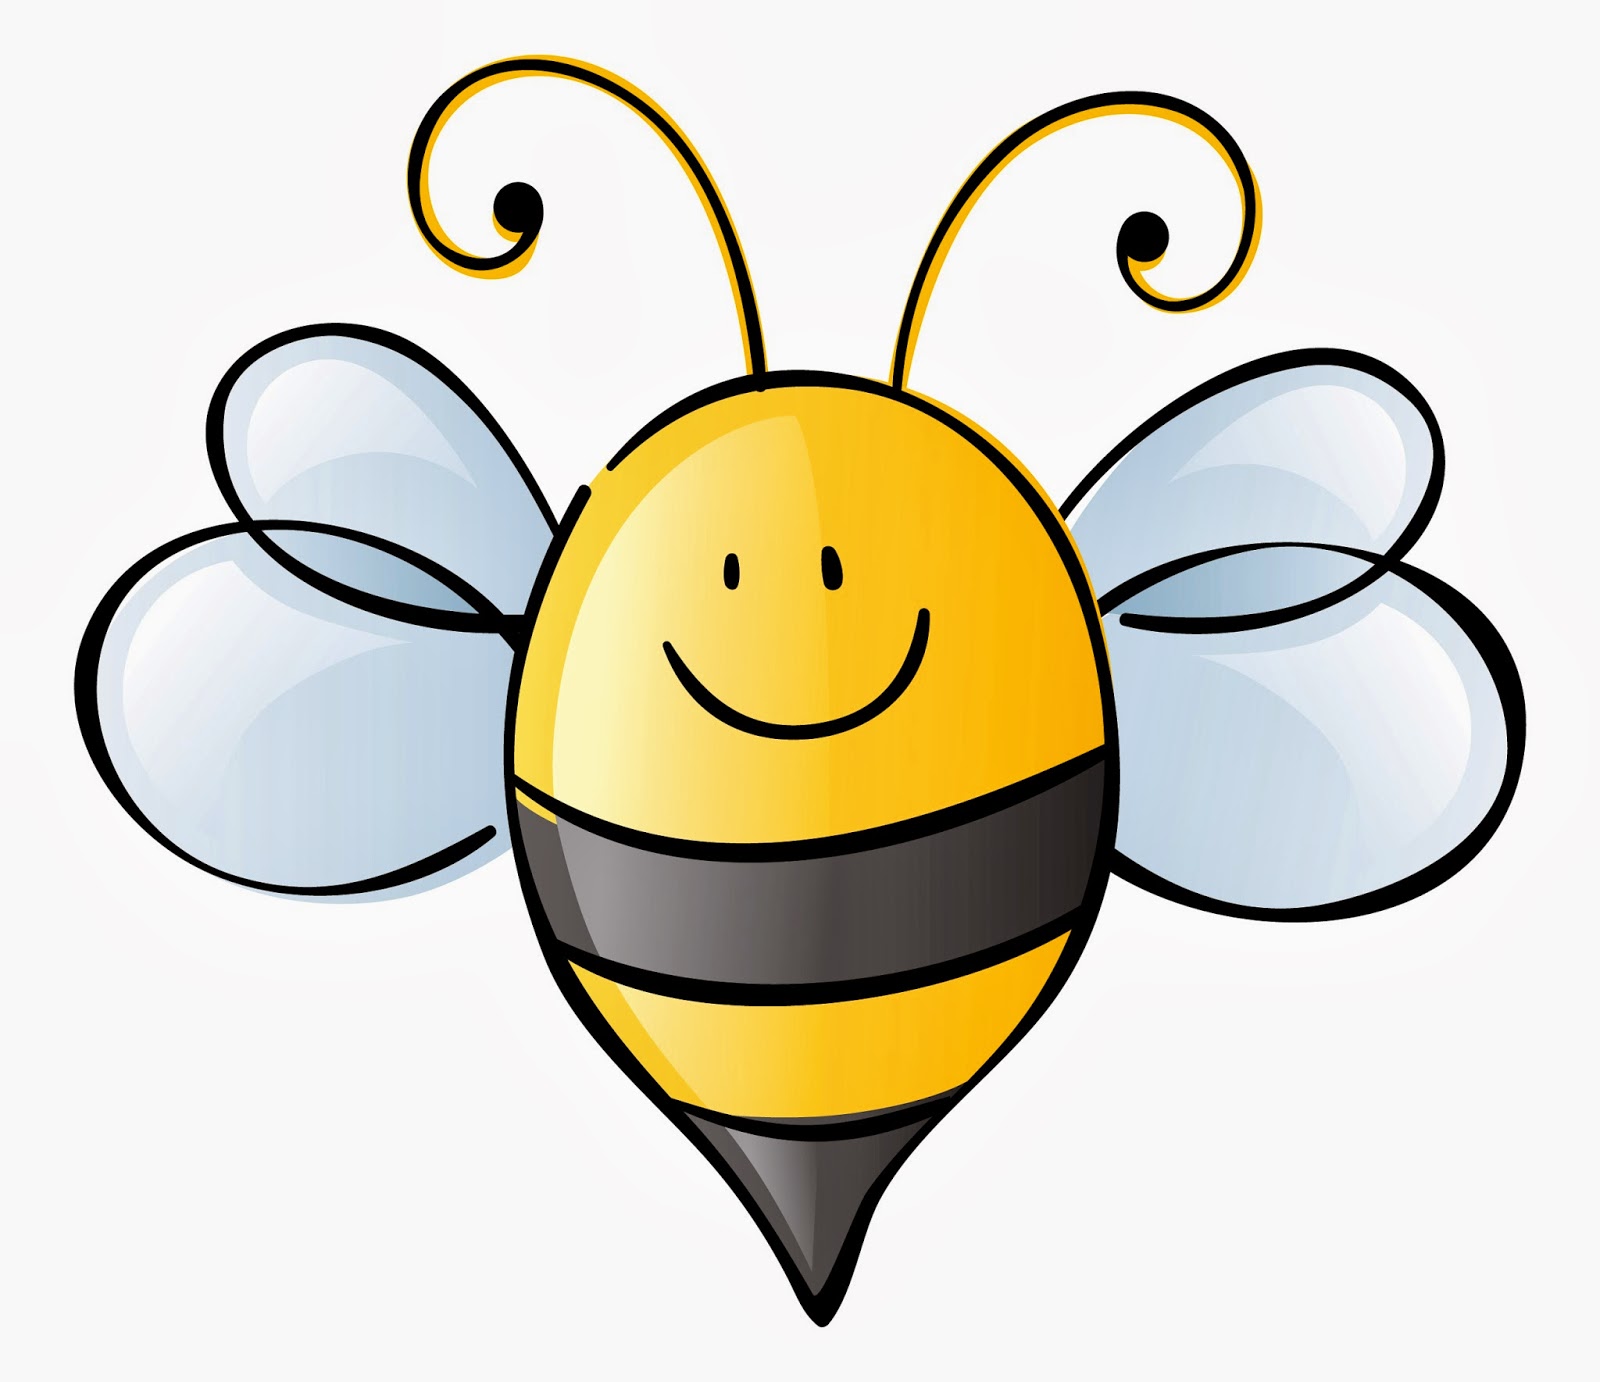 Cute Bee Clipart - Tumundografico